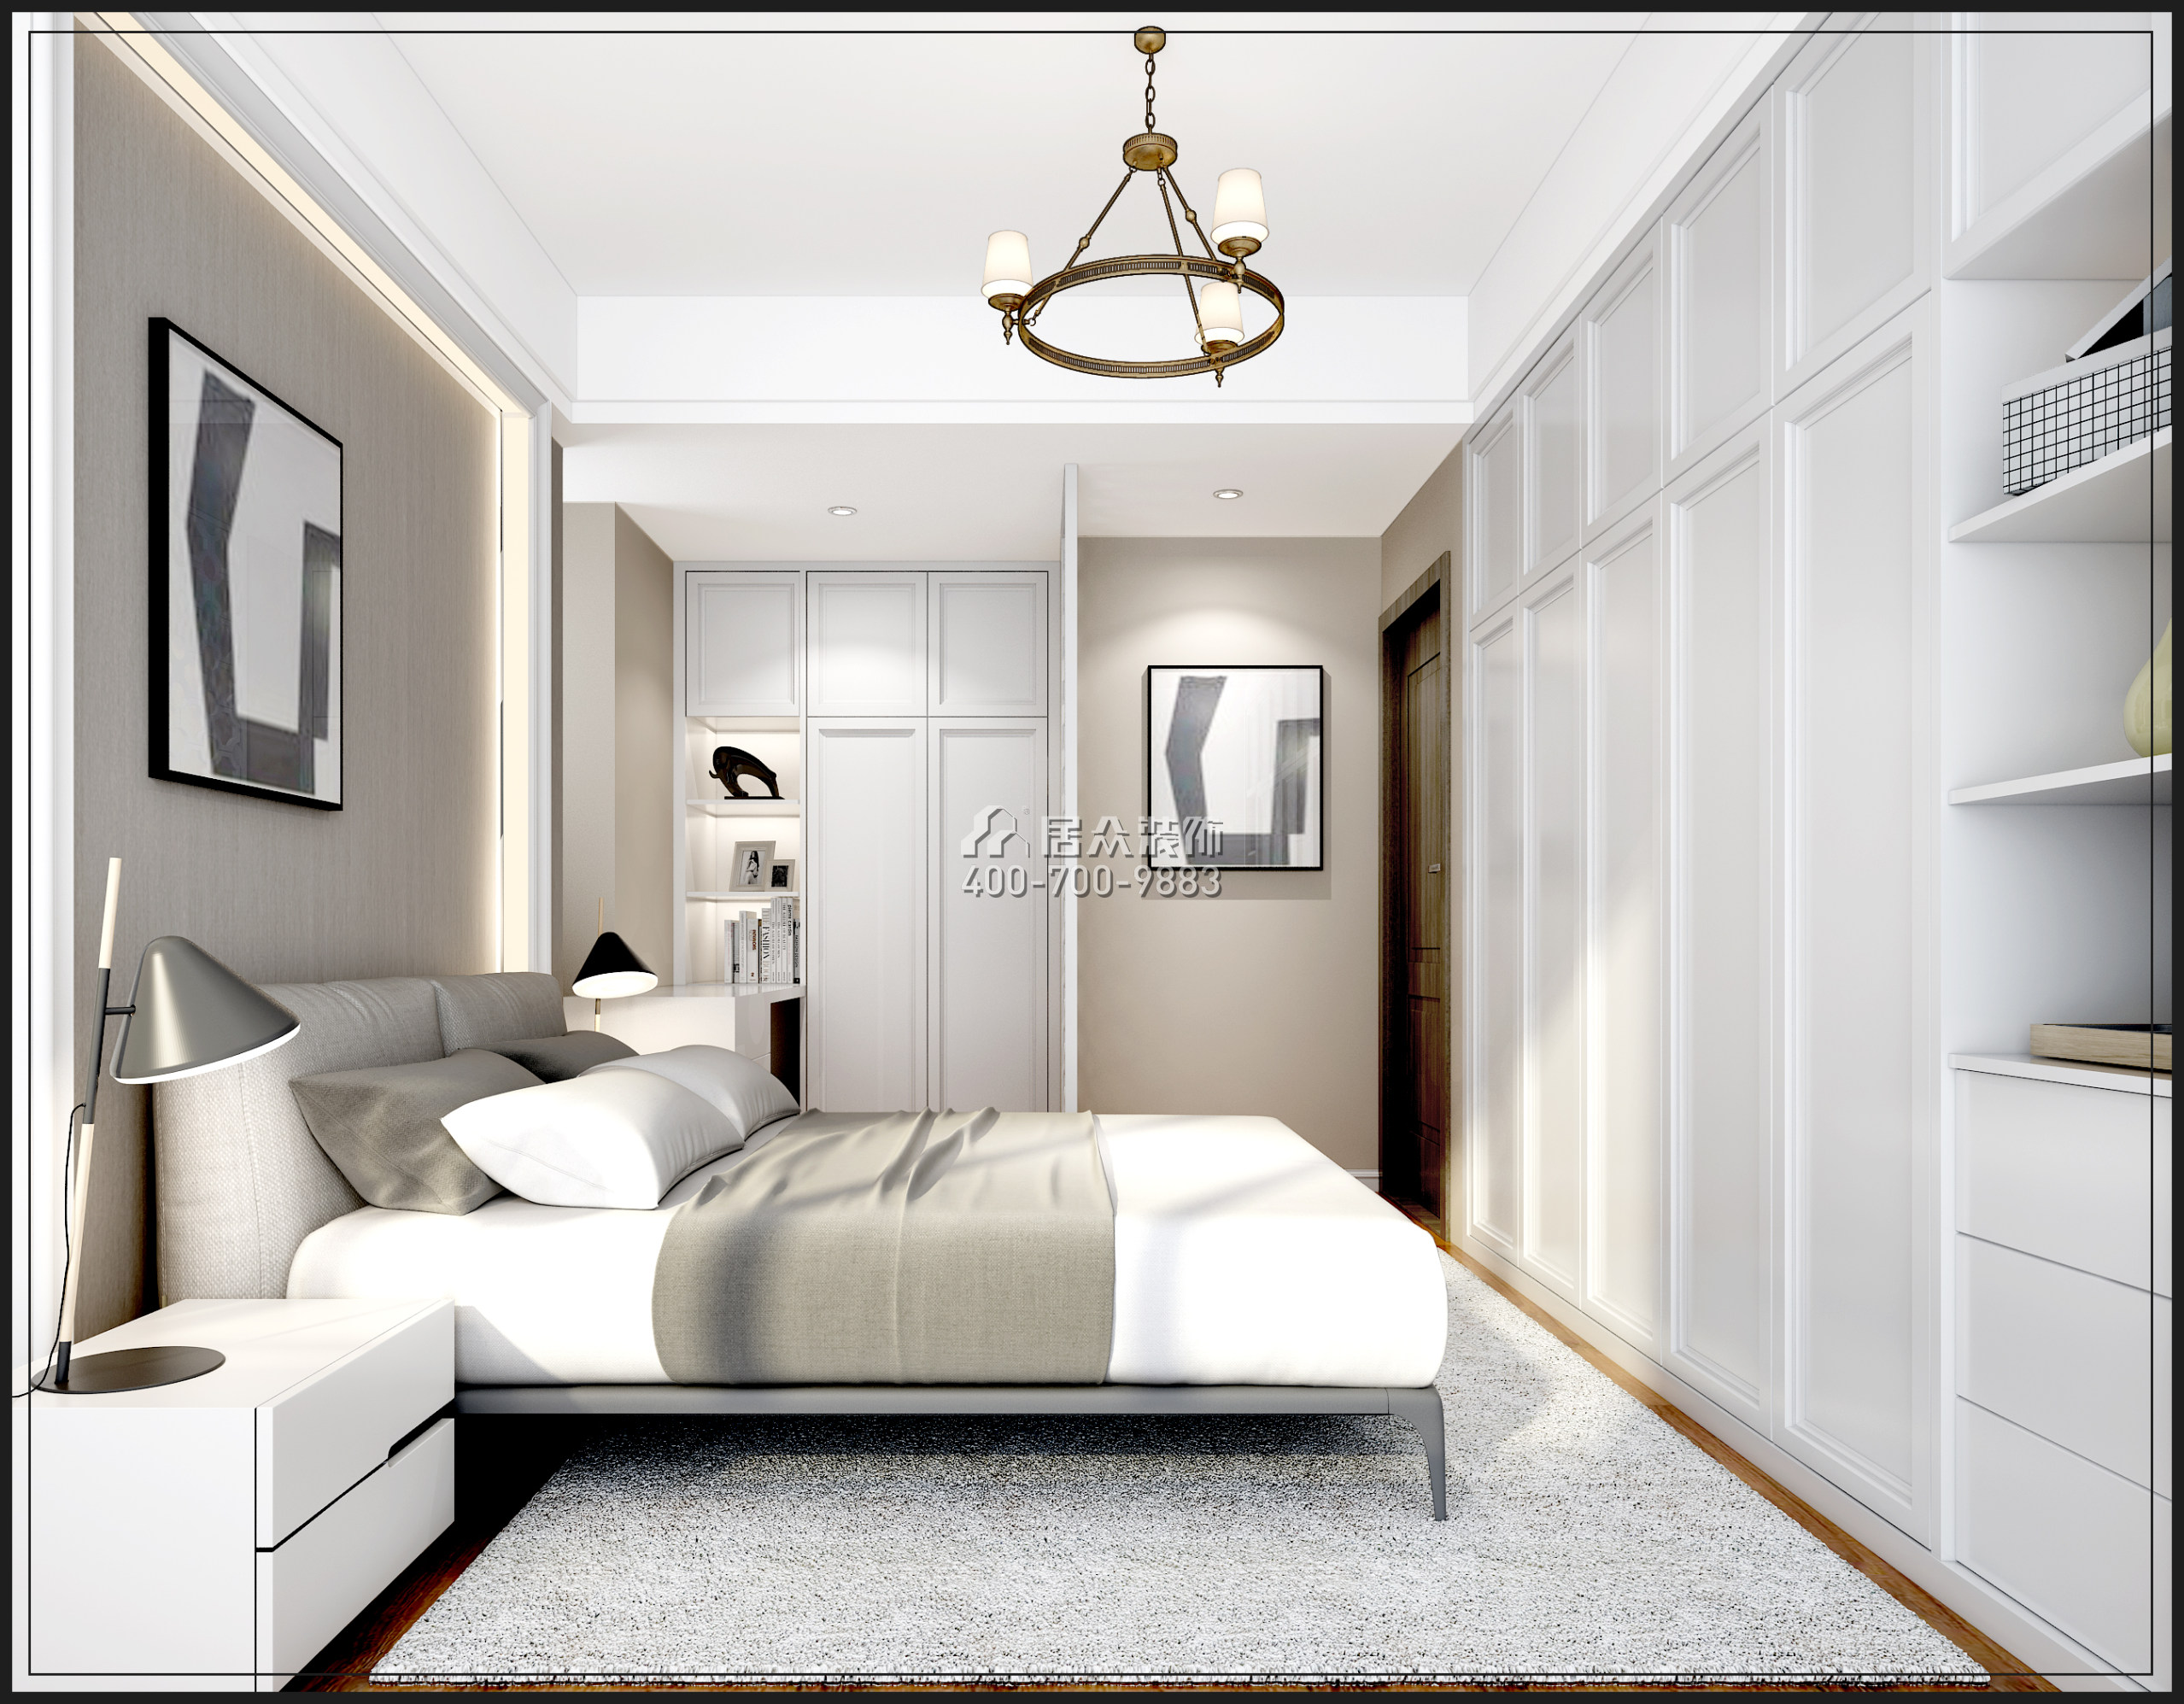 信和自由广场88平方米欧式风格平层户型卧室装修效果图